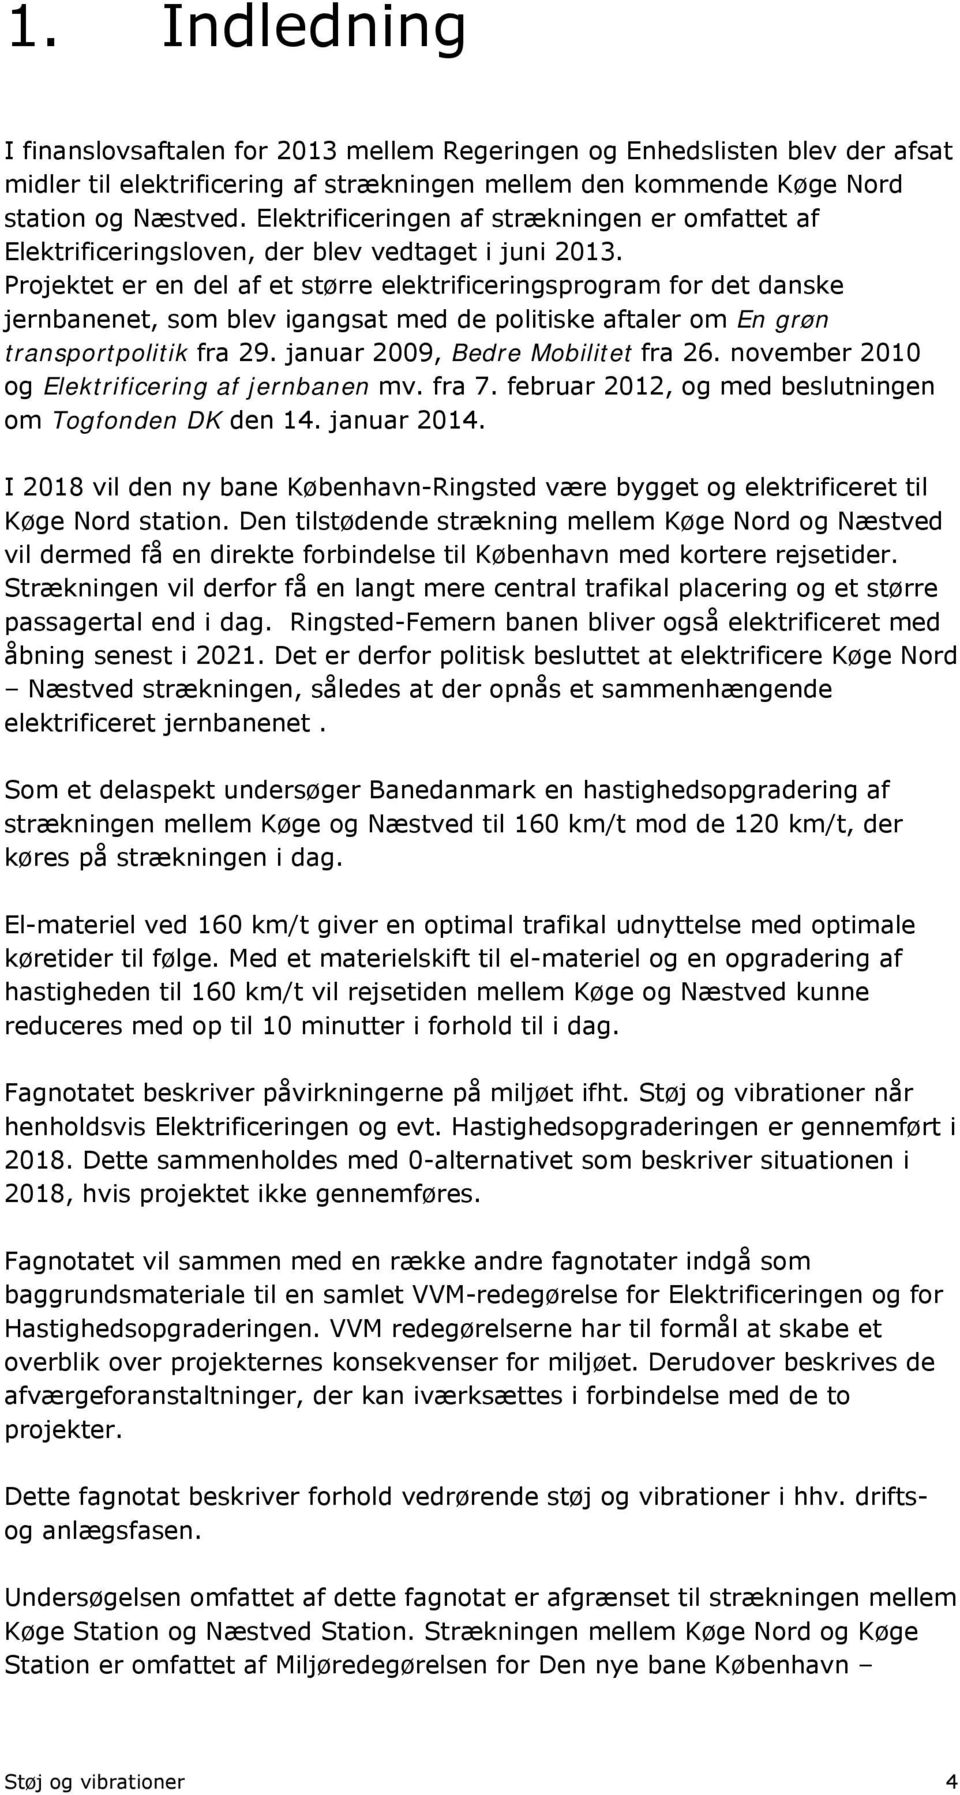 Projektet er en del af et større elektrificeringsprogram for det danske jernbanenet, som blev igangsat med de politiske aftaler om En grøn transportpolitik fra 29. januar 2009, Bedre Mobilitet fra 26.